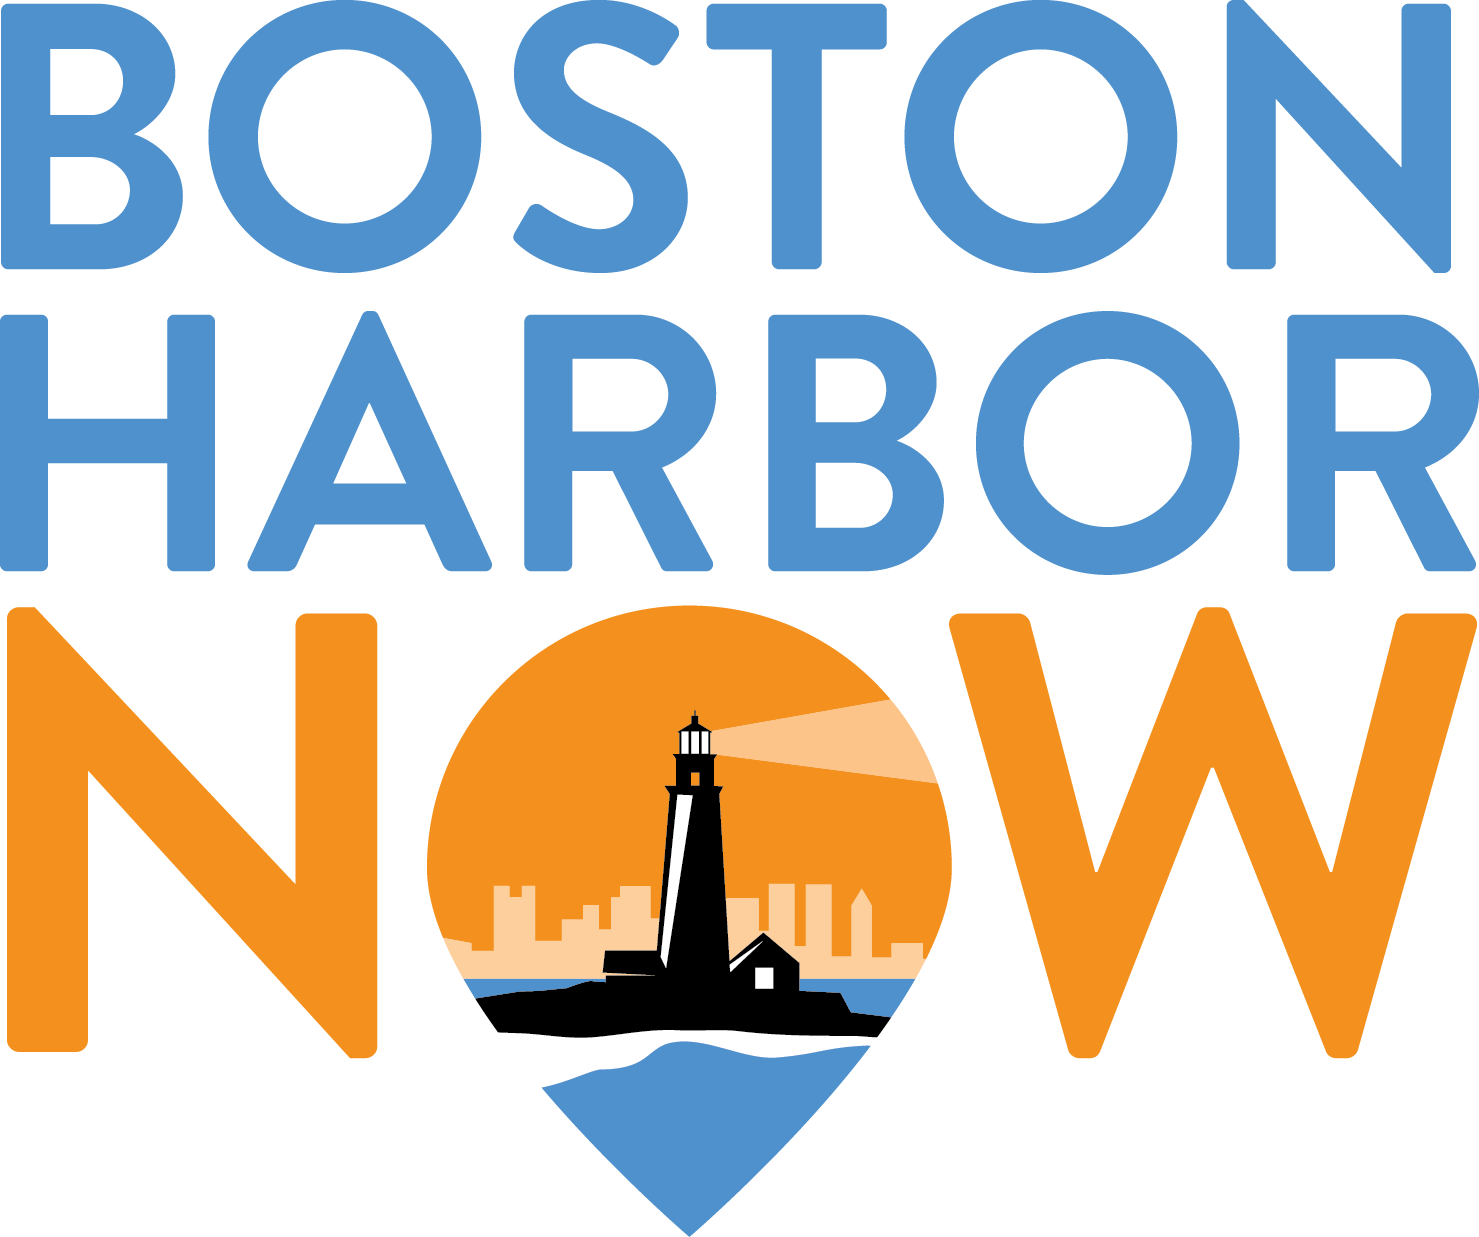 Boston Harbor Now Logo